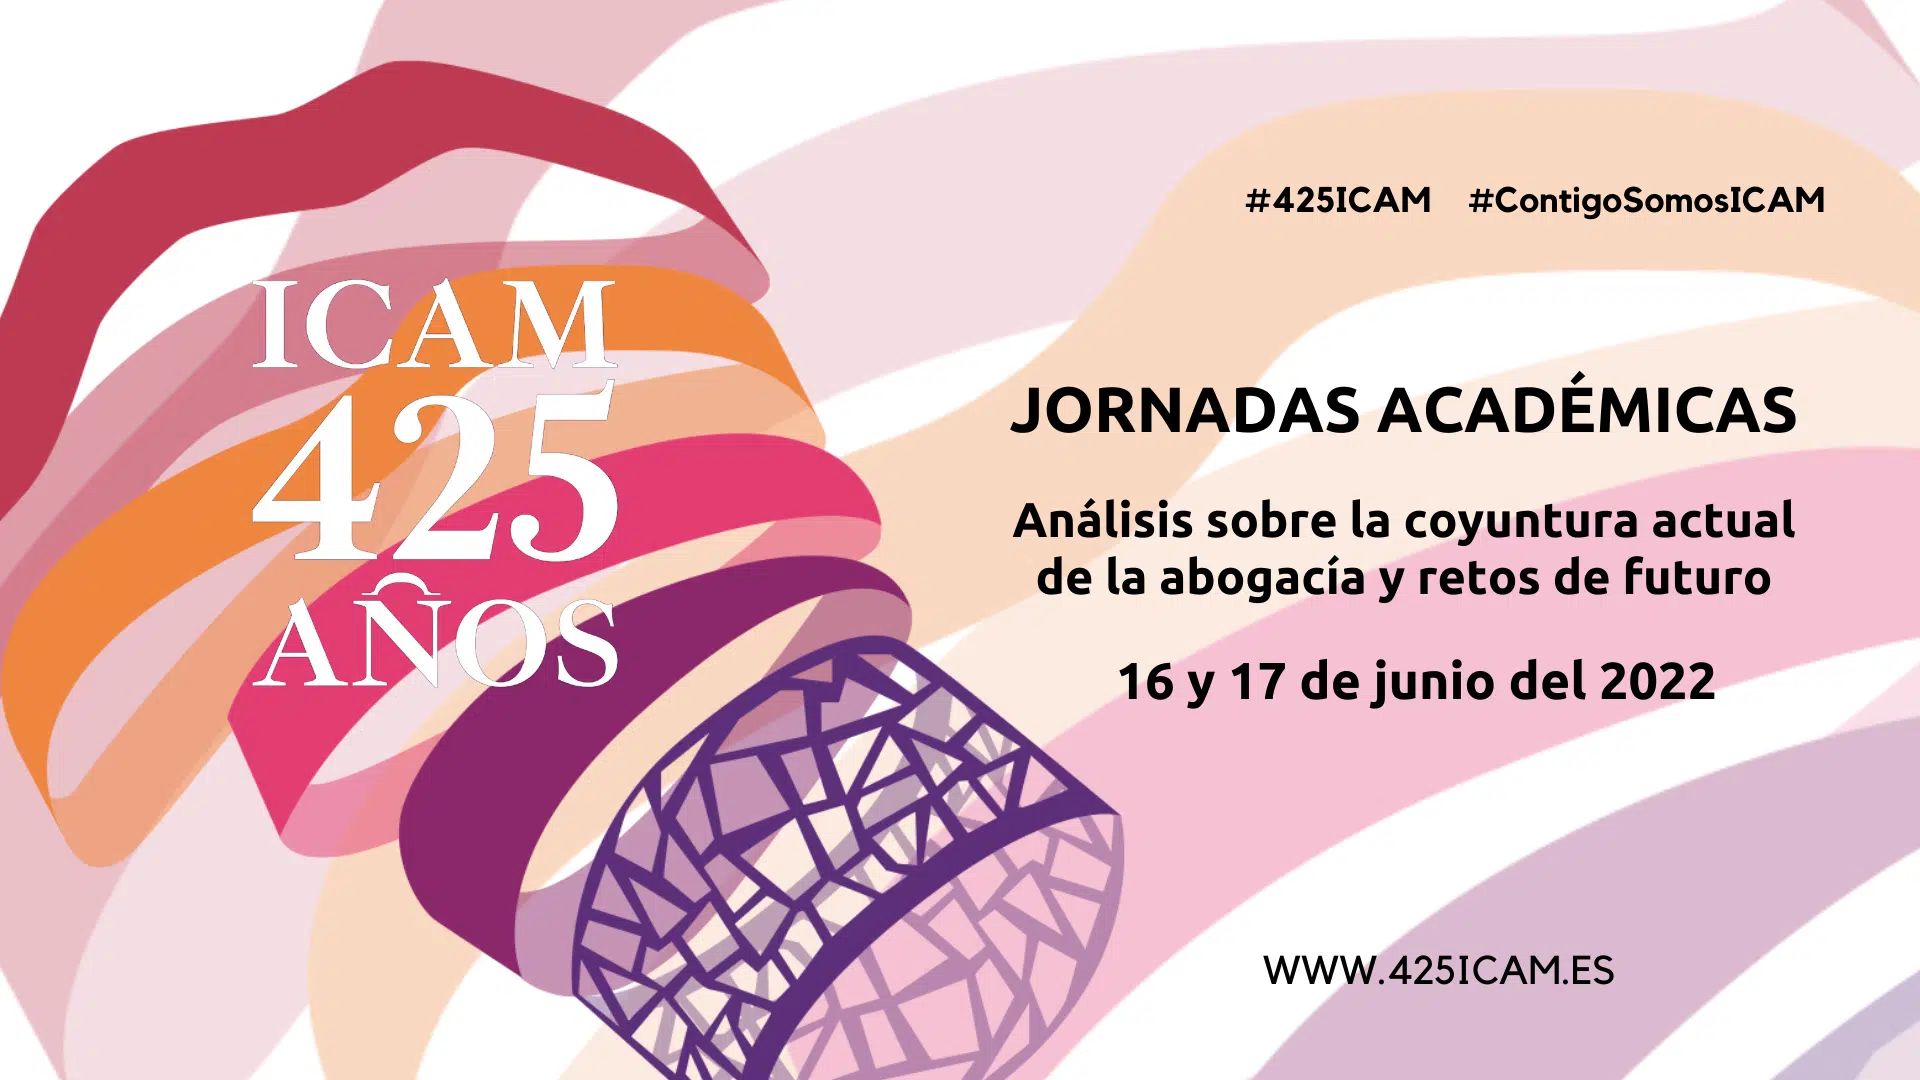 Un centenar de expertos debatirán sobre el presente y futuro de la Abogacía en las Jornadas Académicas del 425 aniversario del ICAM